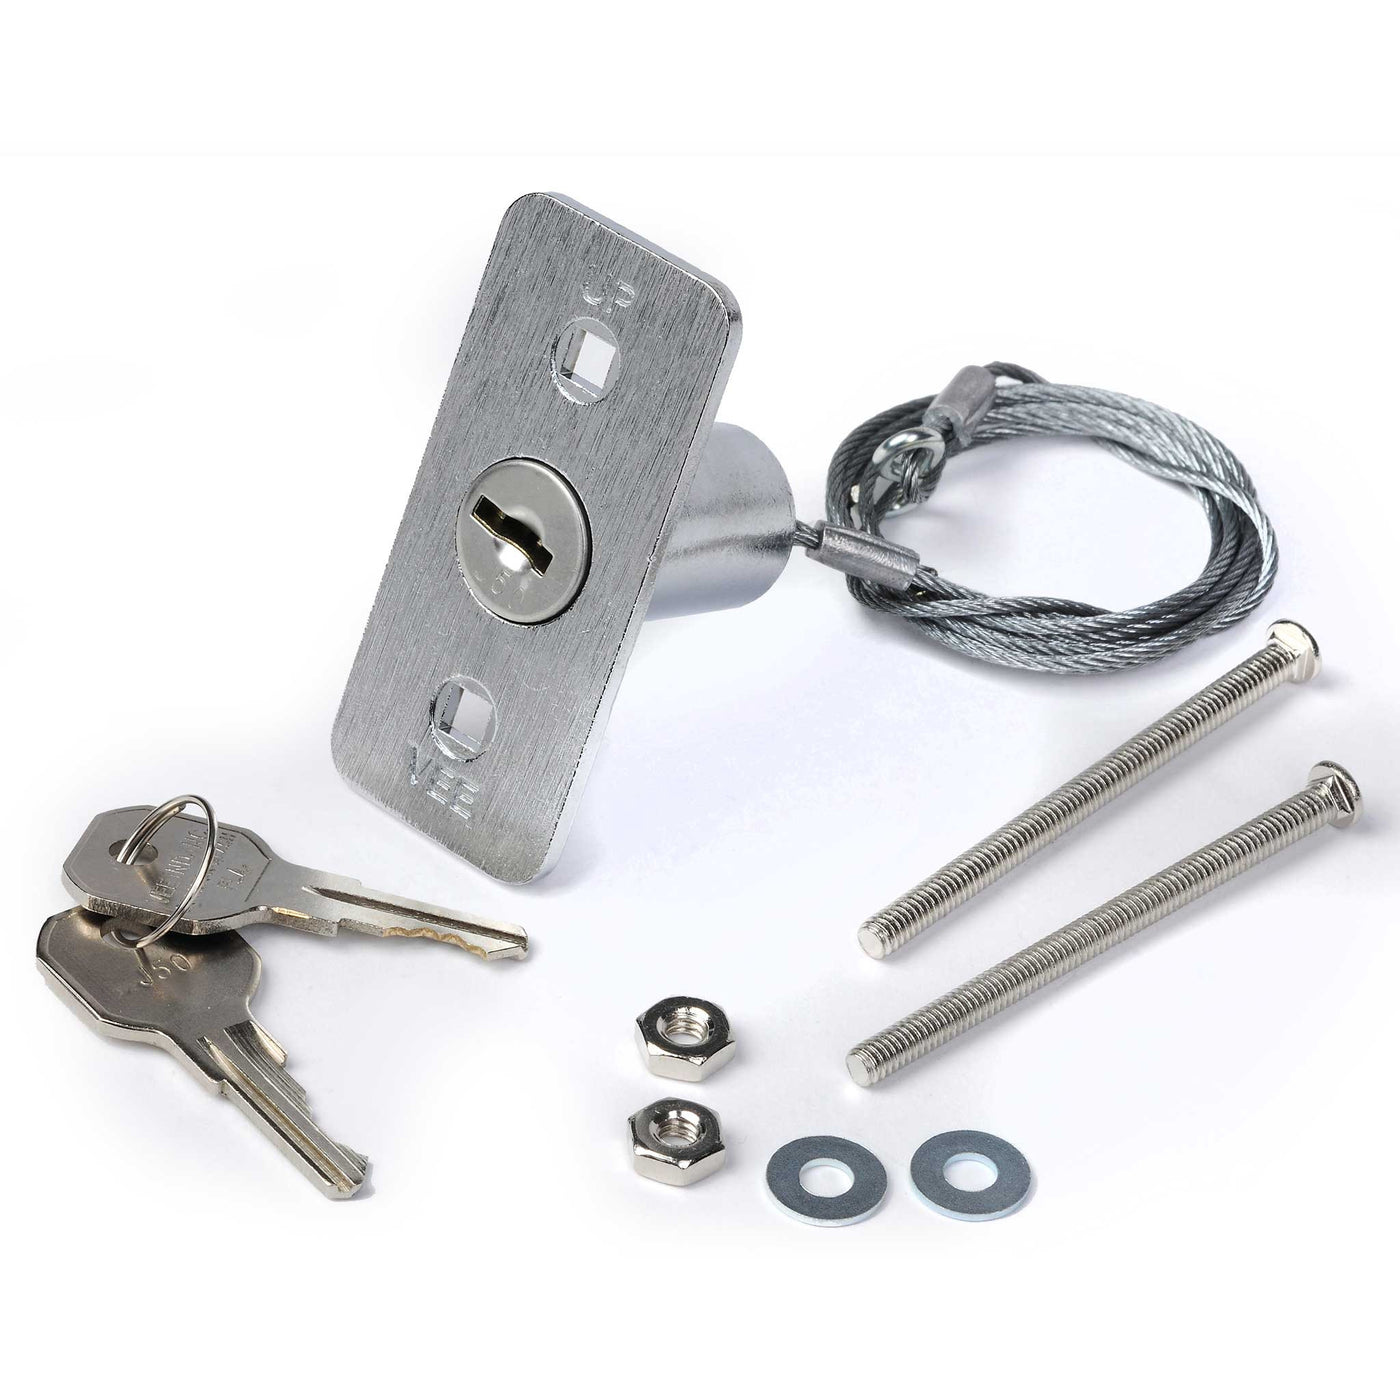 73 Modern How to install garage door emergency key release 